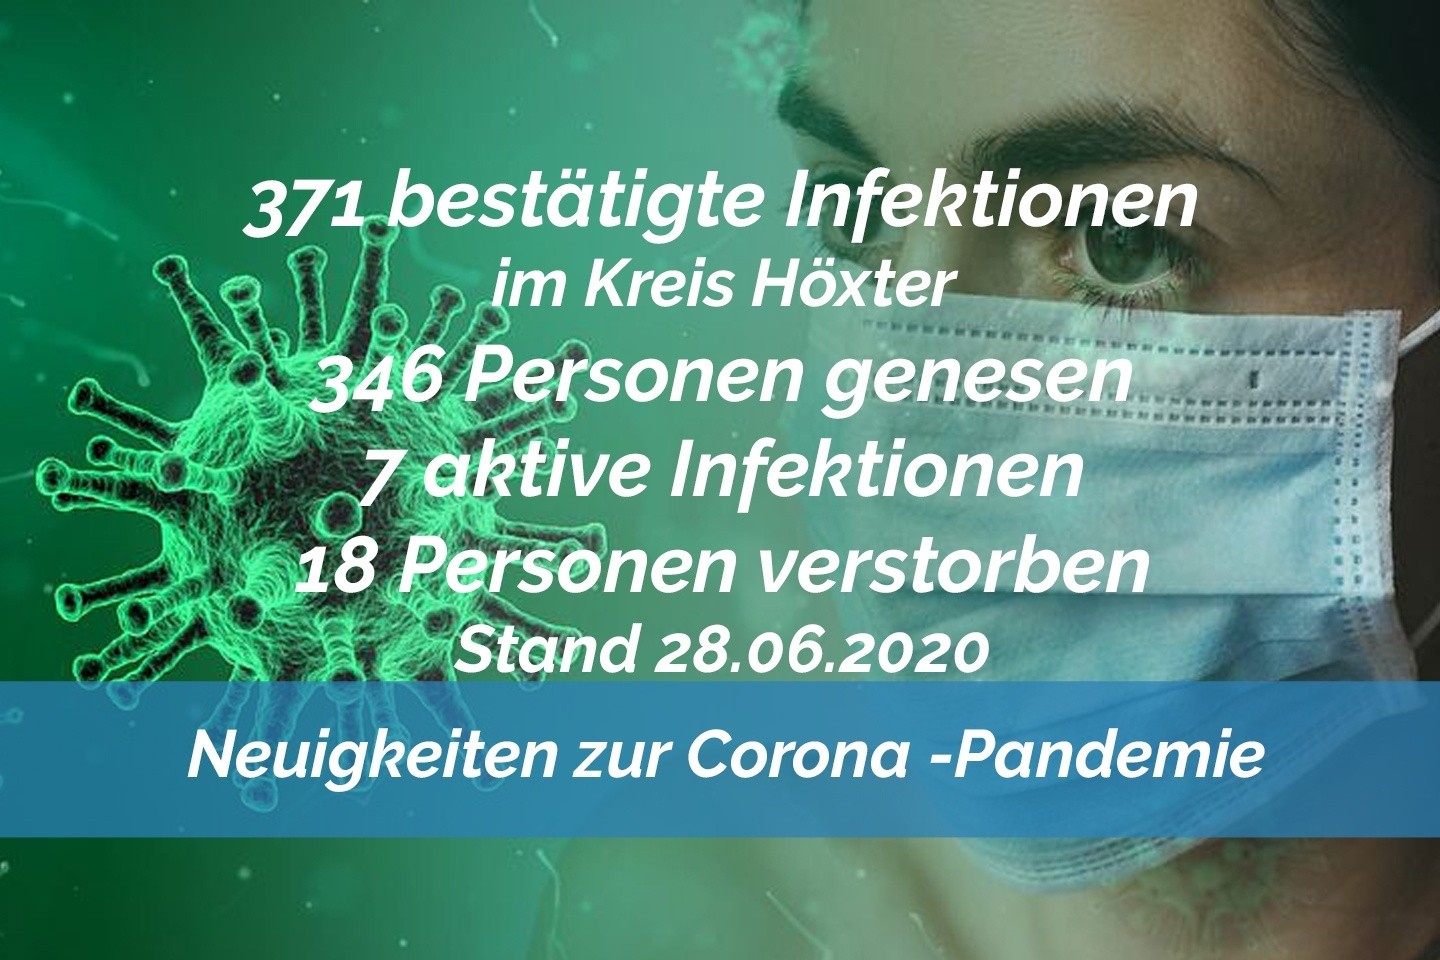 Update vom 28. Juni: 371 bestätigte Infektionen mit dem neuen Coronavirus im Kreis Höxter